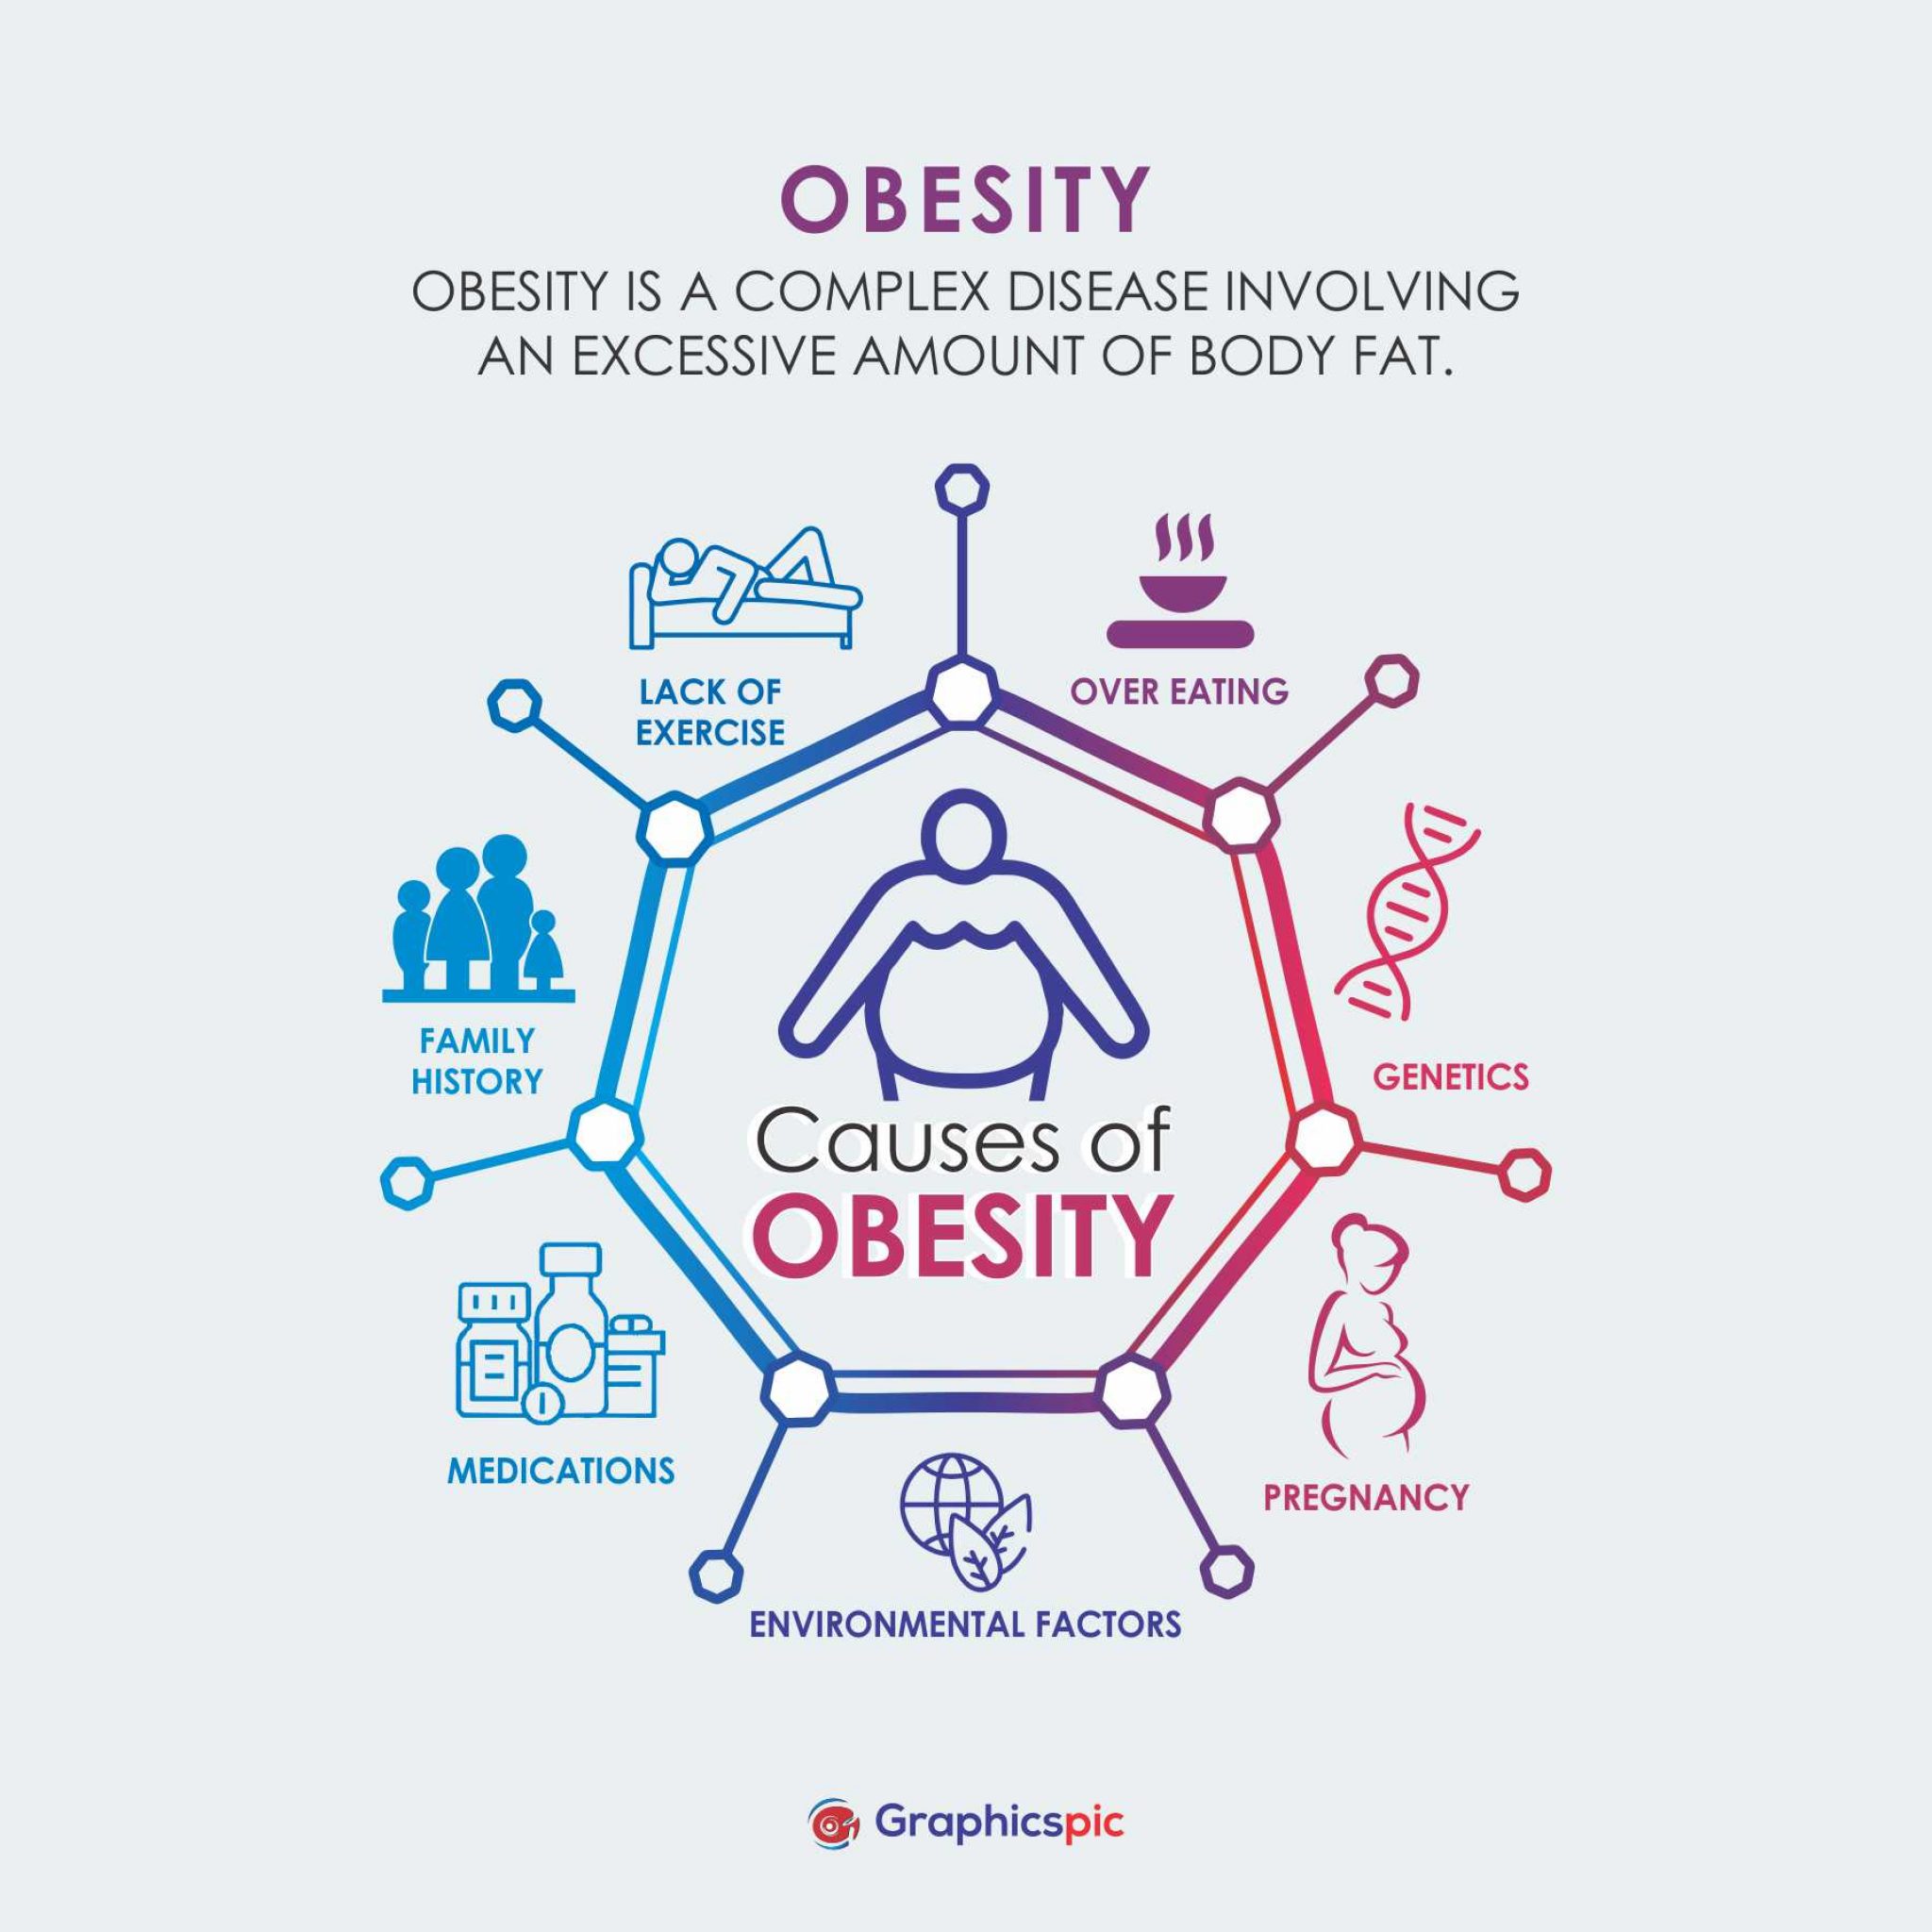 presentation on obesity